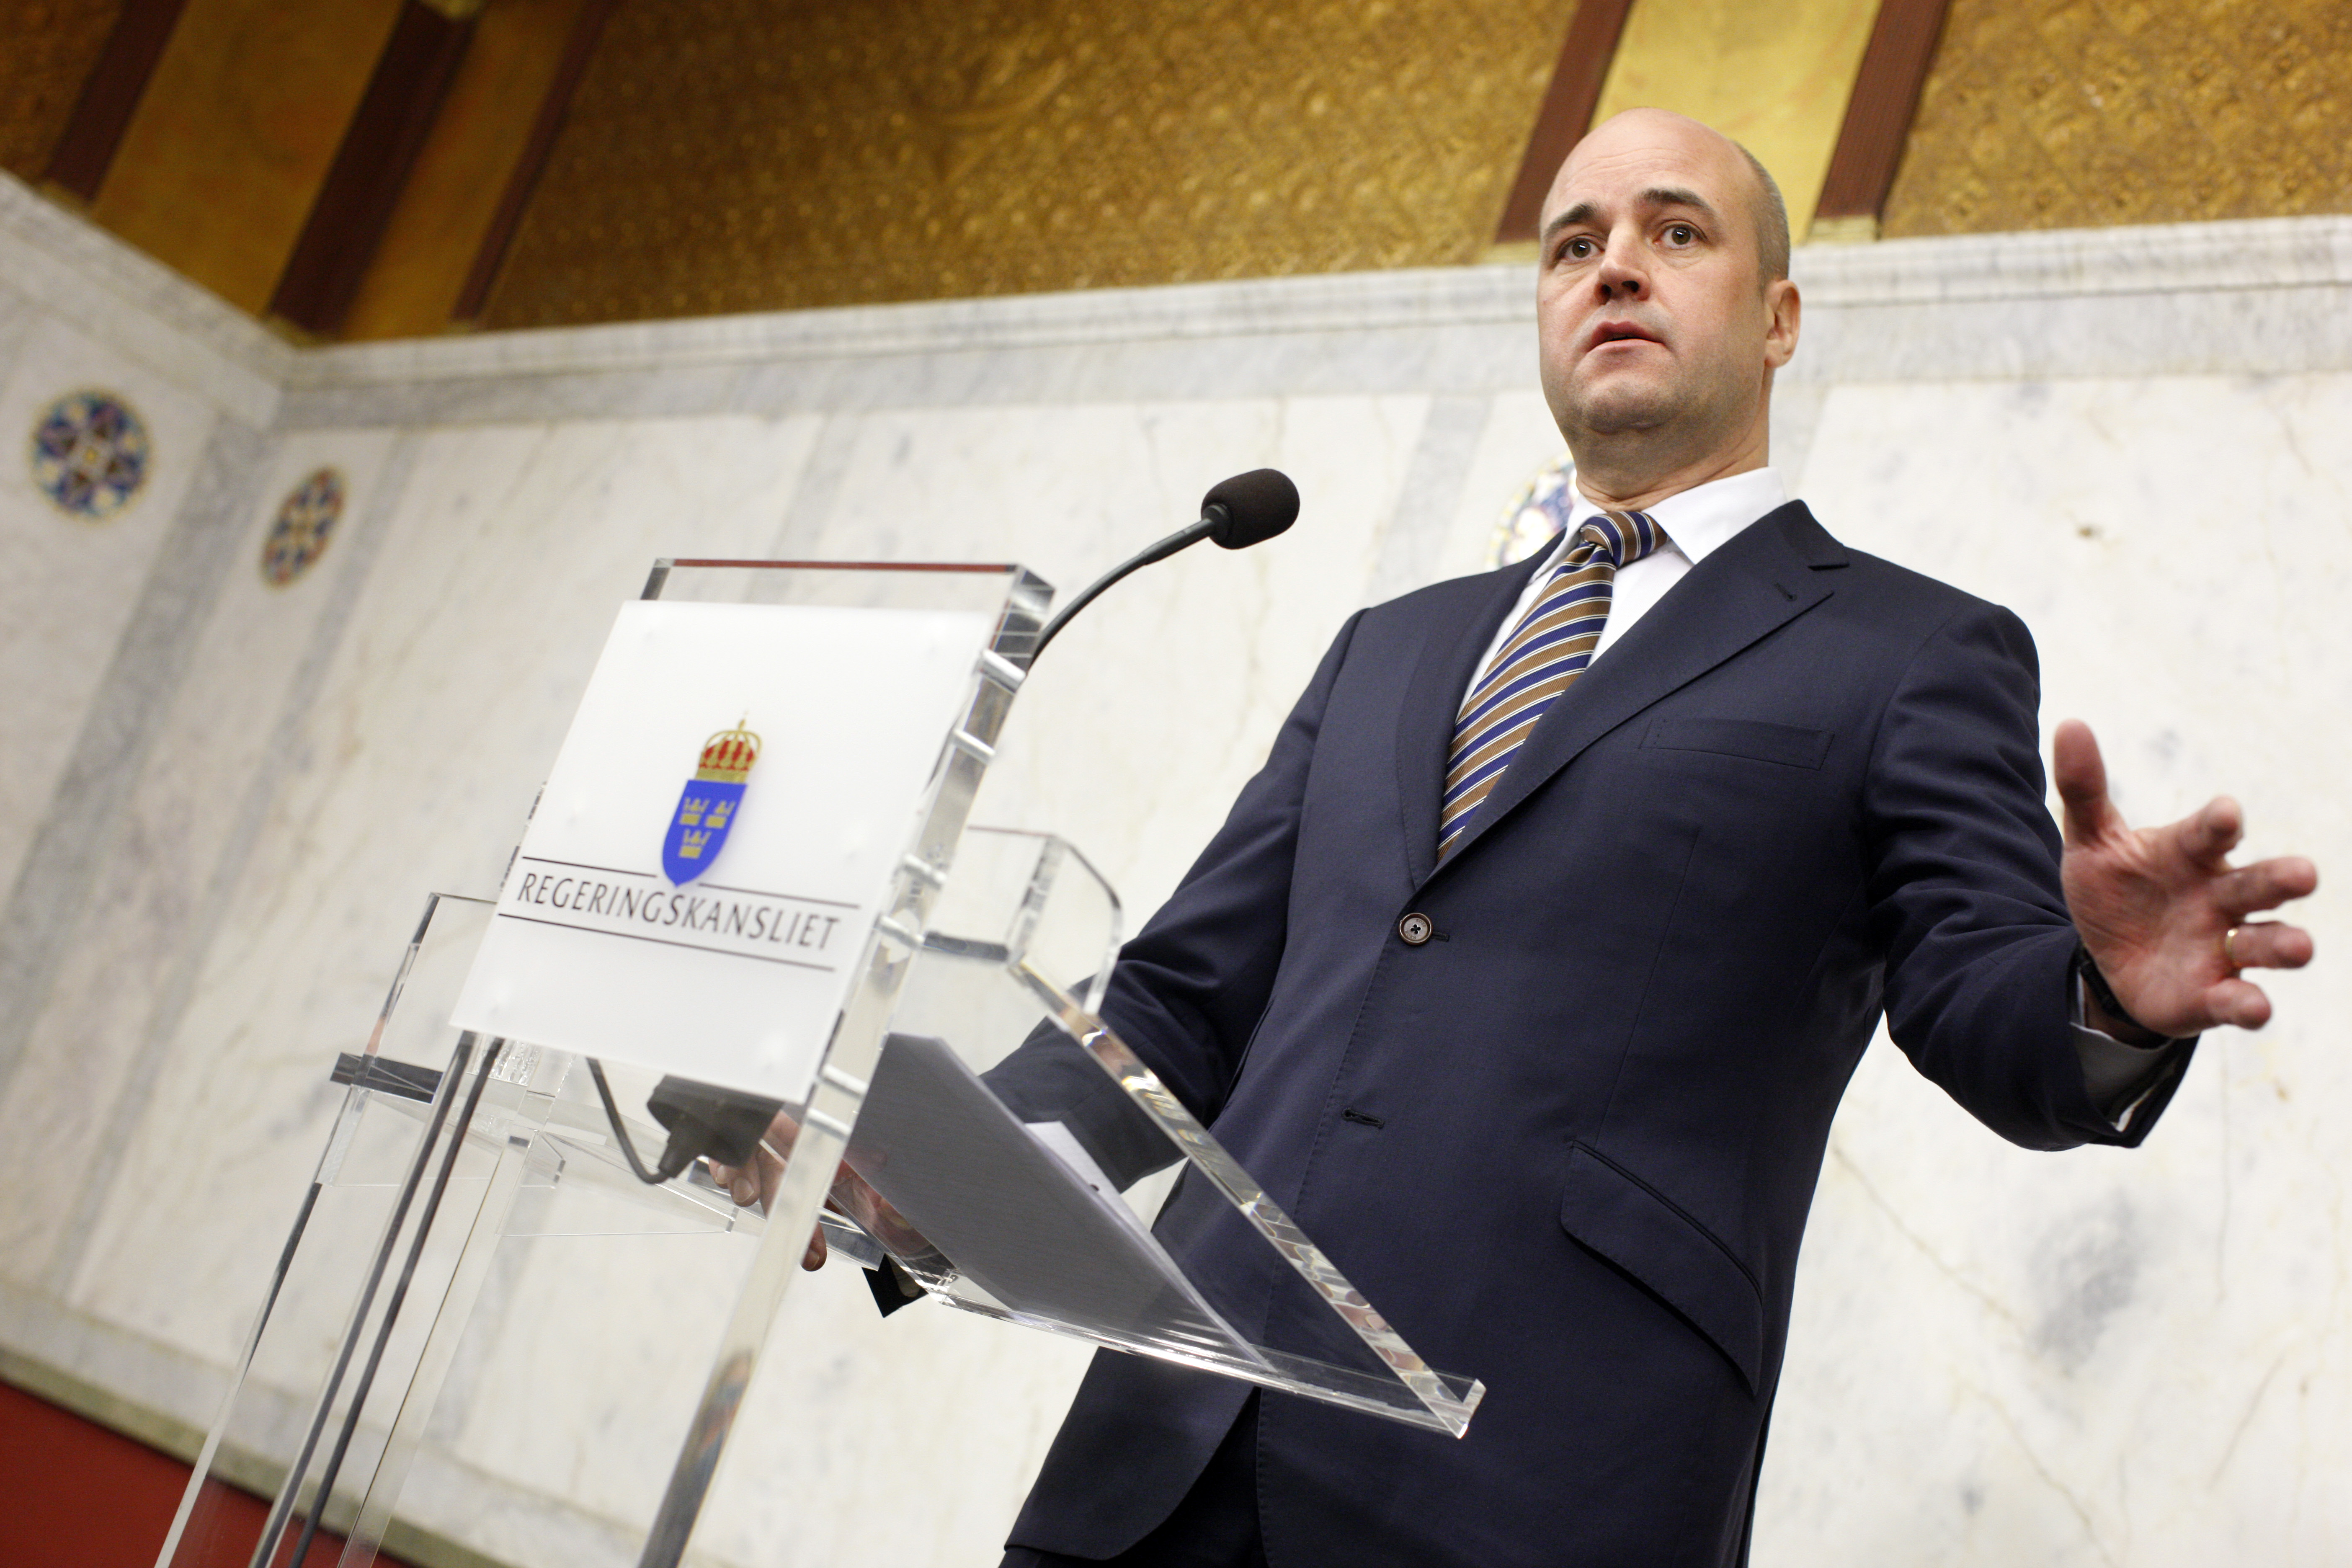 Förhandlingar, Fredrik Reinfeldt, Ministerpost, Minister, Regering